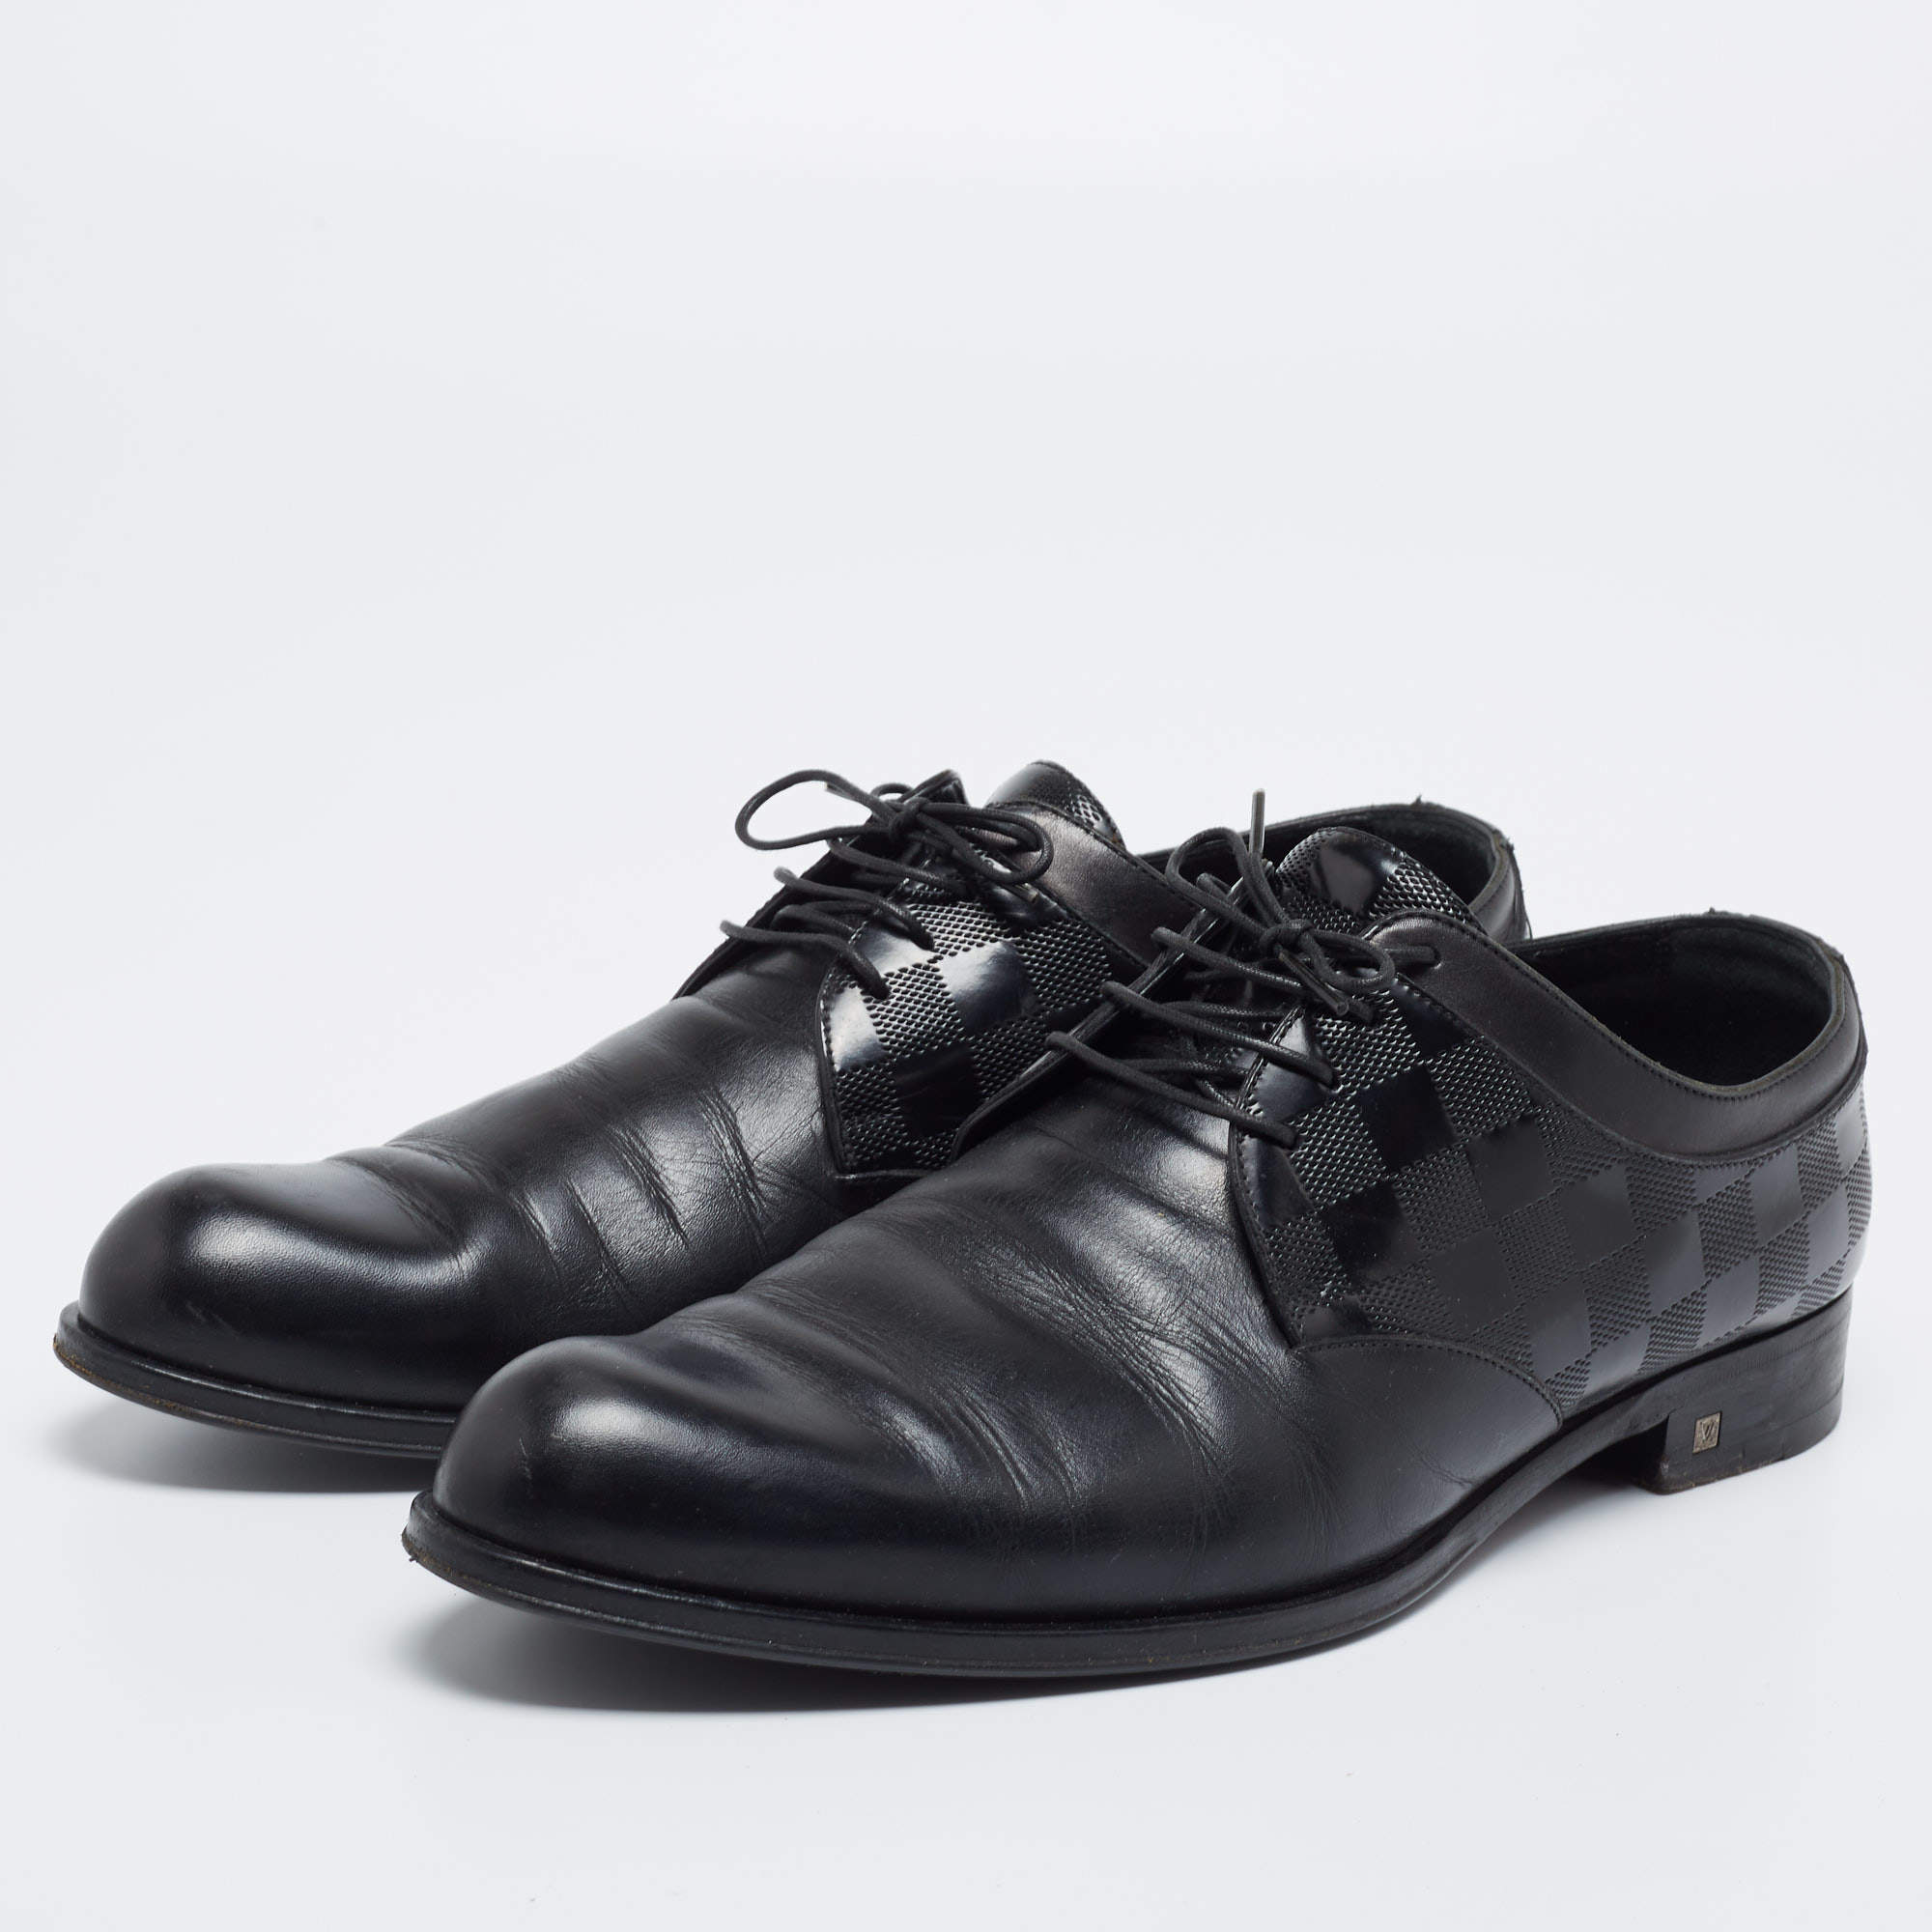 Louis Vuitton, Shoes, Louis Vuitton Mens Black Oxford Dress Shoes